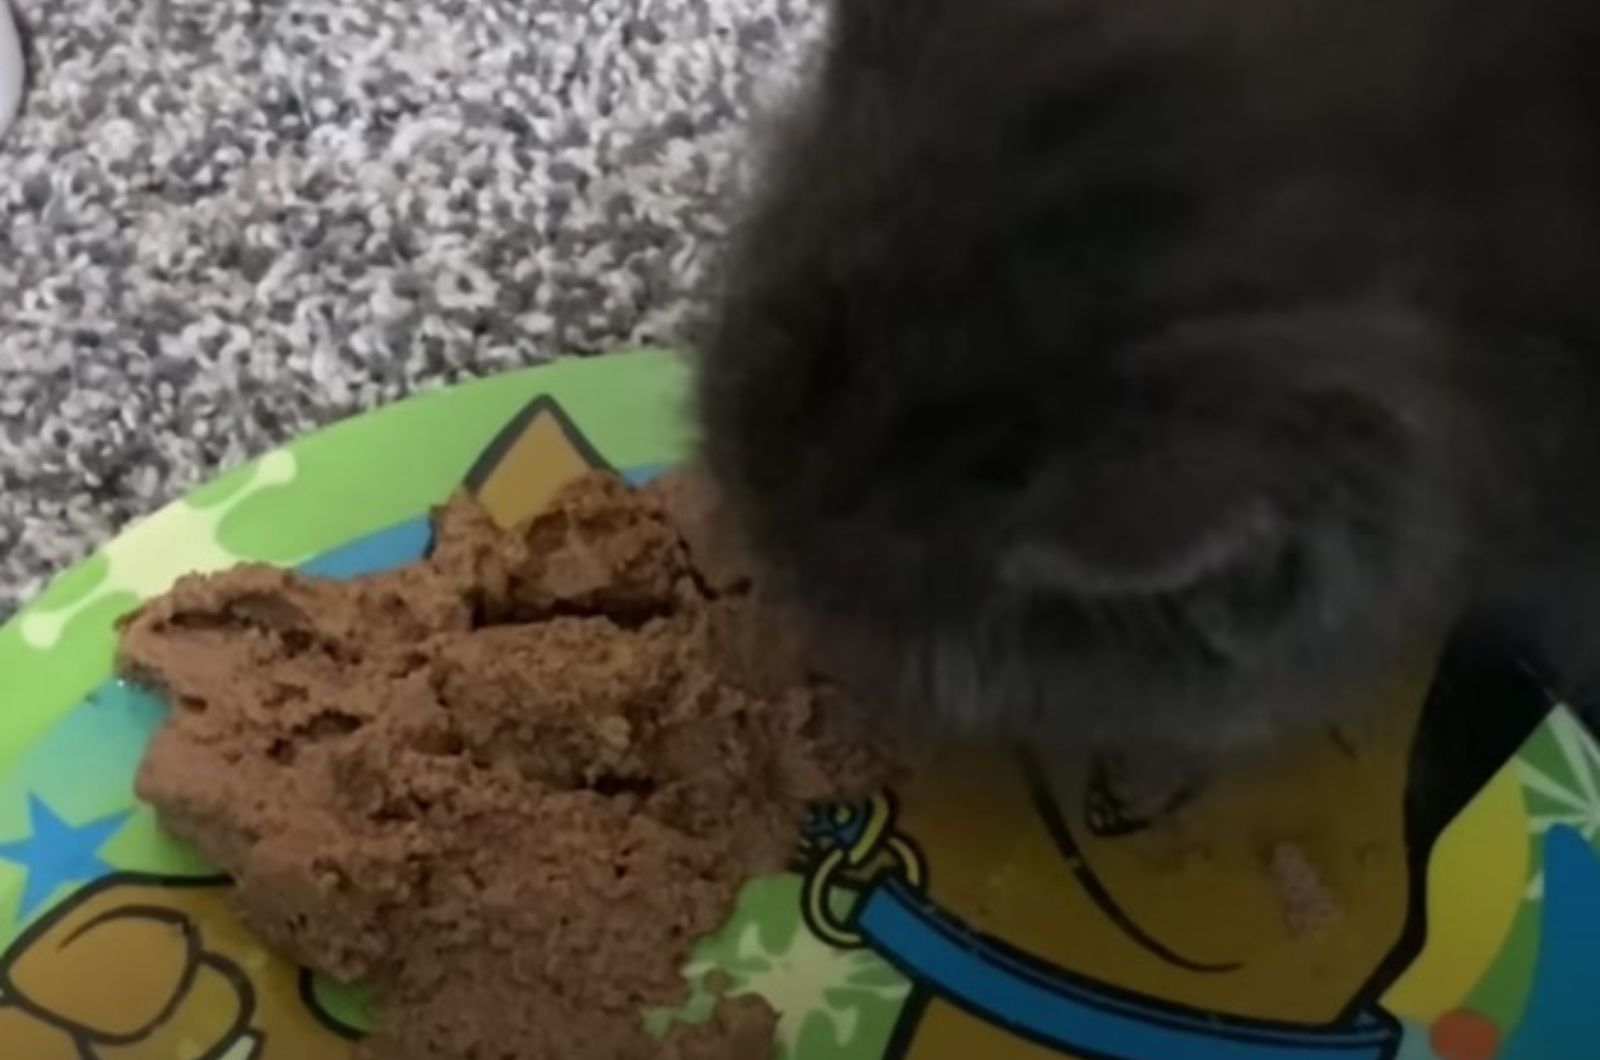 kitten eating